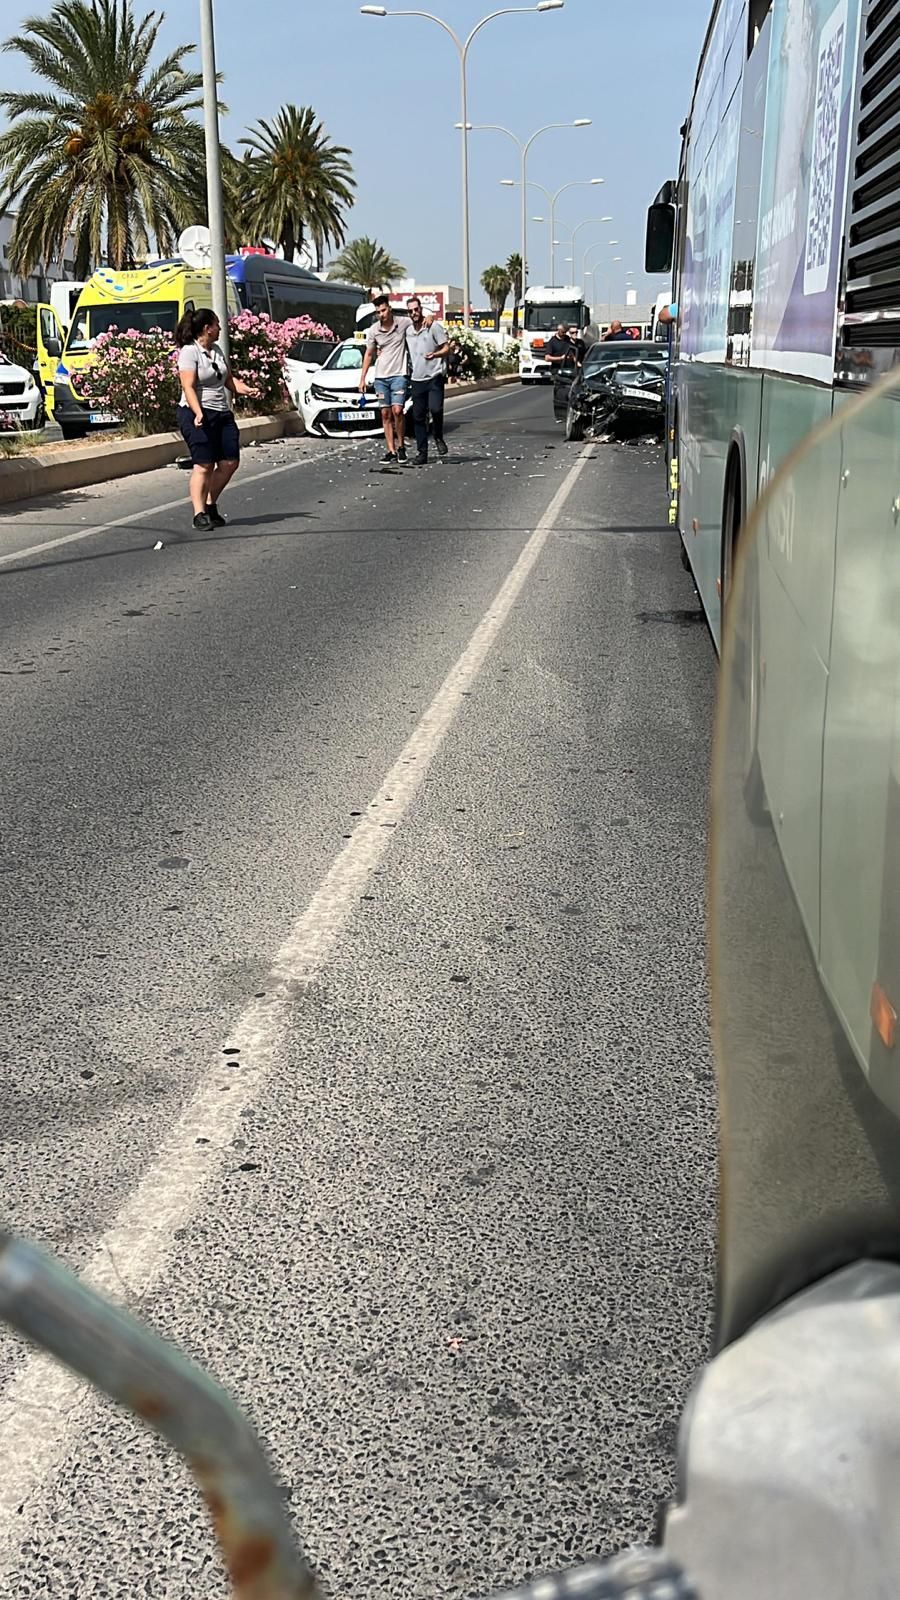 Un conductor adelanta a una furgoneta en línea continua y choca contra un taxi